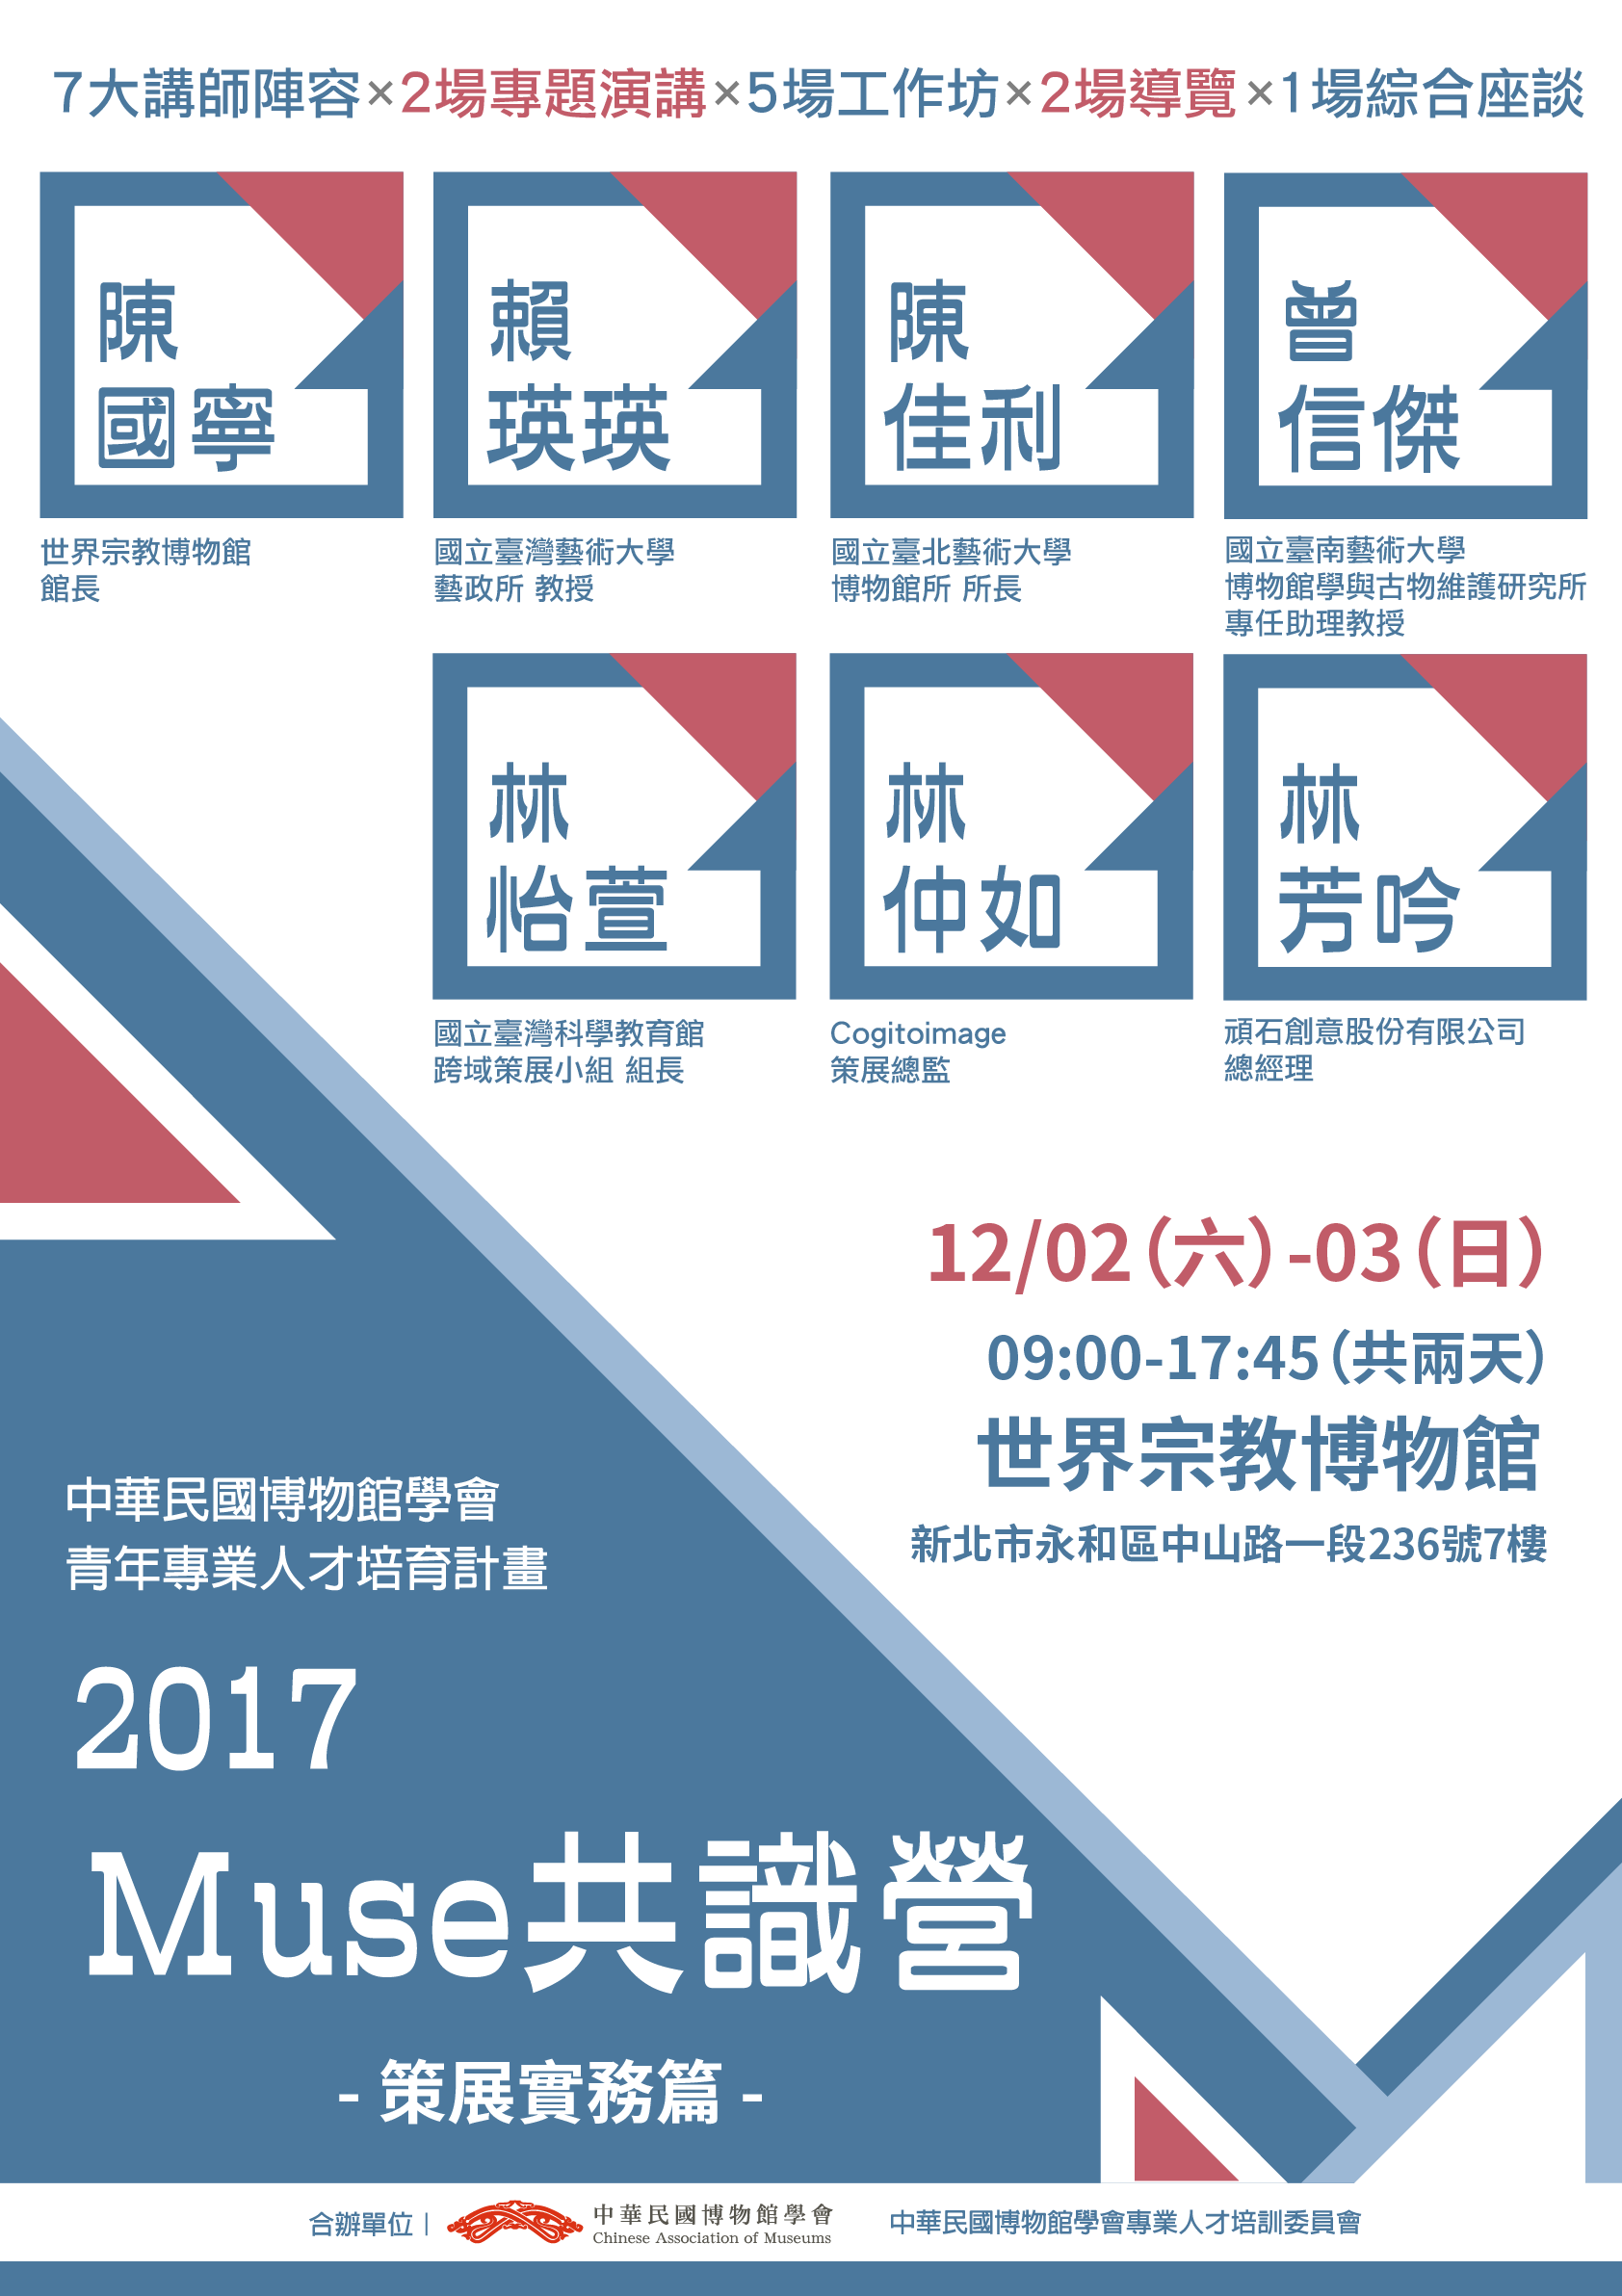 【中華民國博物館學會】2017 Muse共識營-策展實務篇-正取名單公告